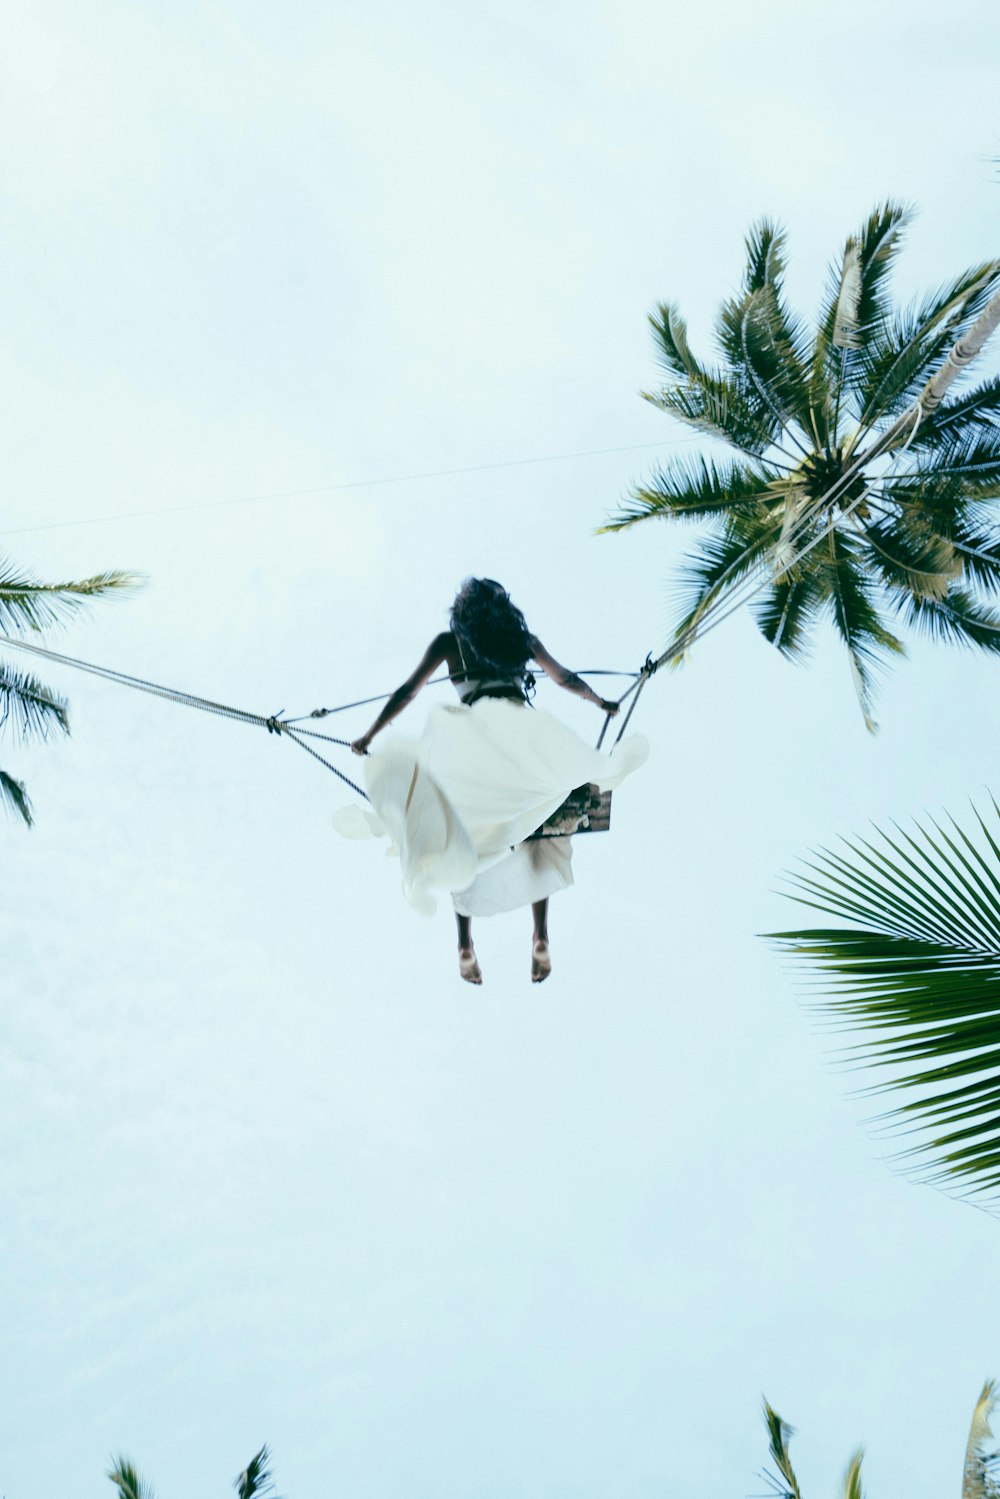 Una mujer con un vestido blanco en una cuerda entre dos palmeras